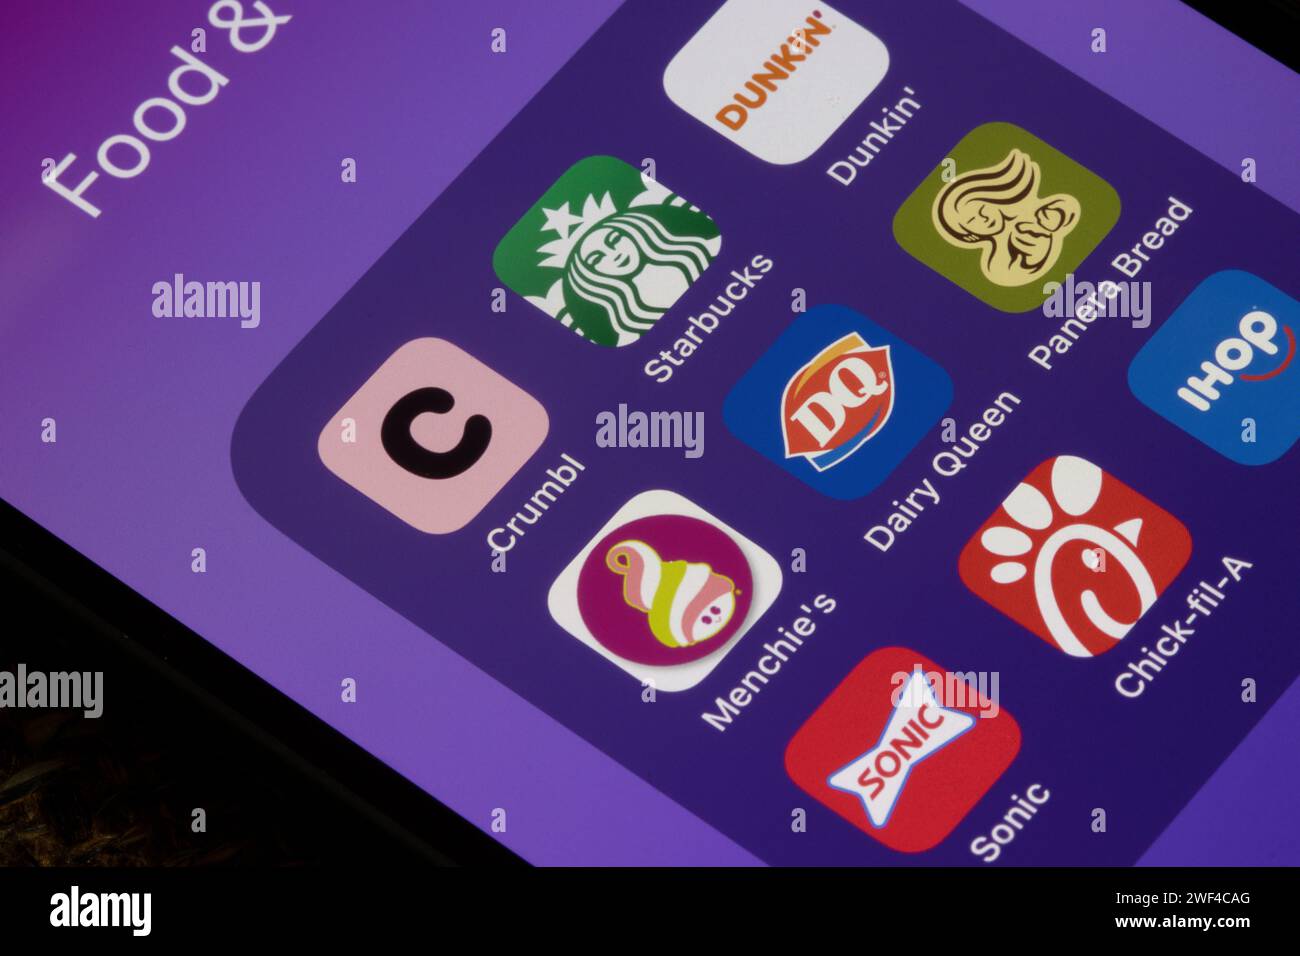 Un iPhone affiche un assortiment d'applications alimentaires et de boissons, notamment Crumbl, Starbucks, Dunkin', Menchie's, Dairy Queen, Panera Bread, Sonic, Chick-fil-A ... Banque D'Images